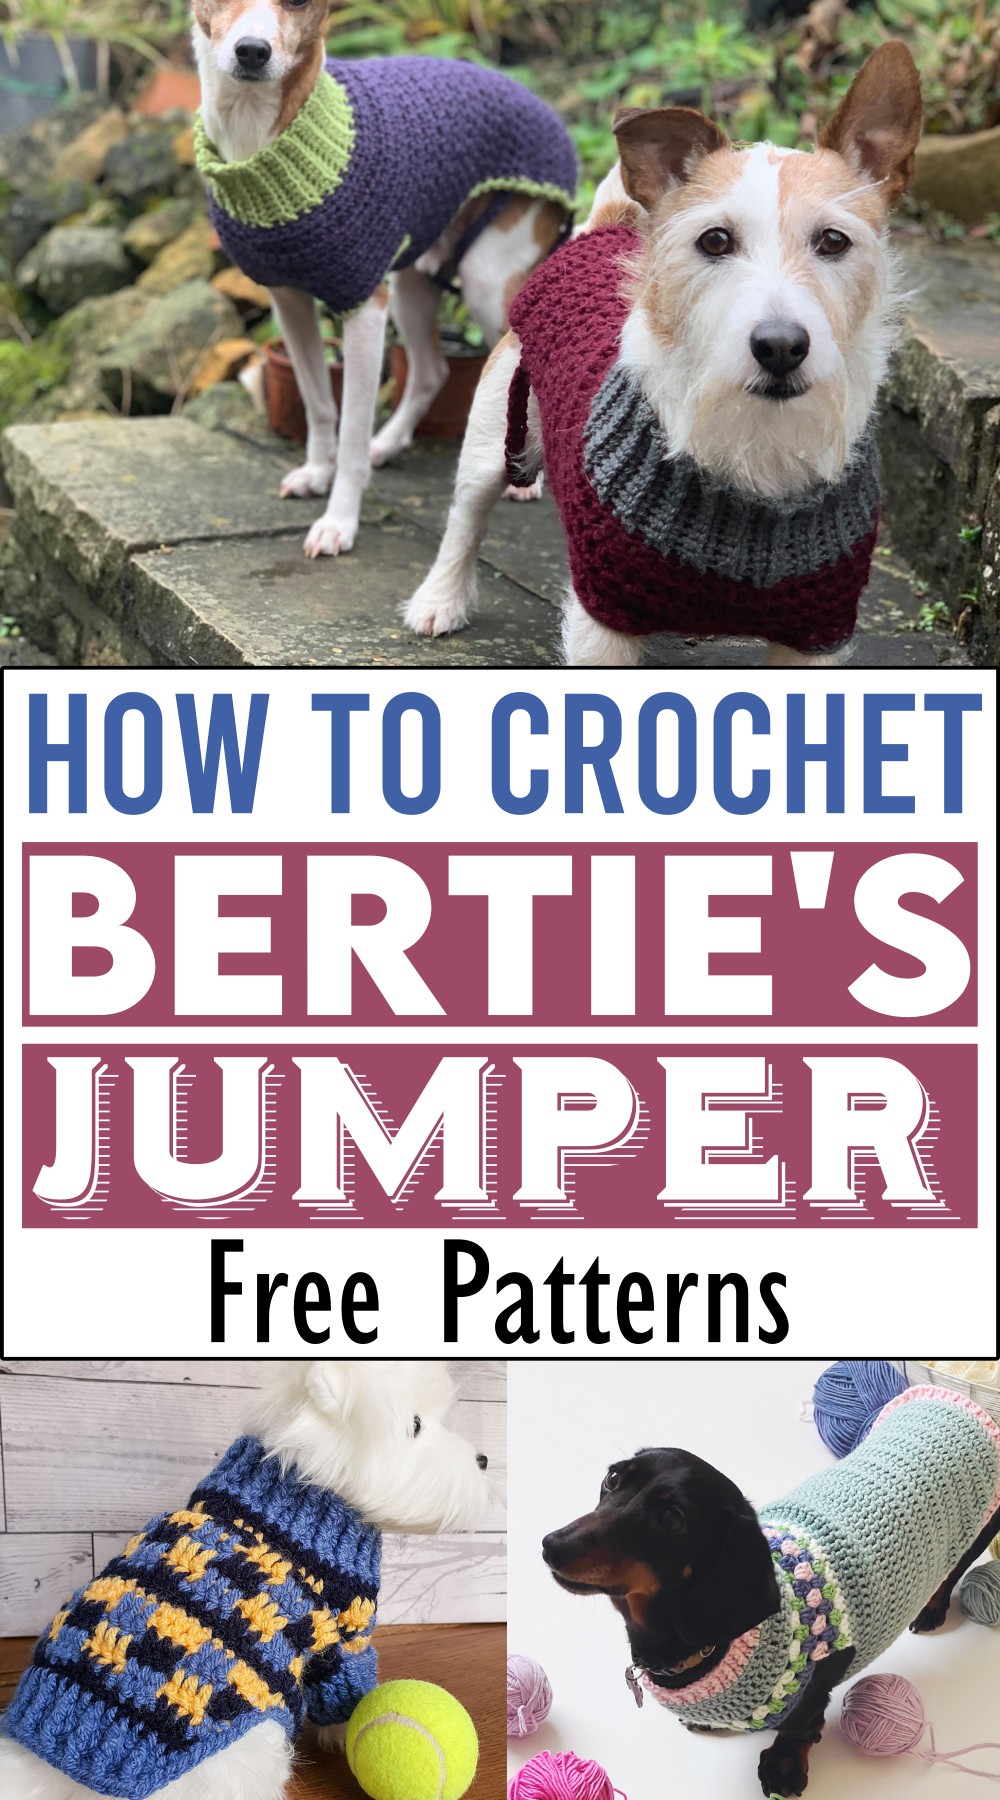 How to Crochet Bertie's Jumper